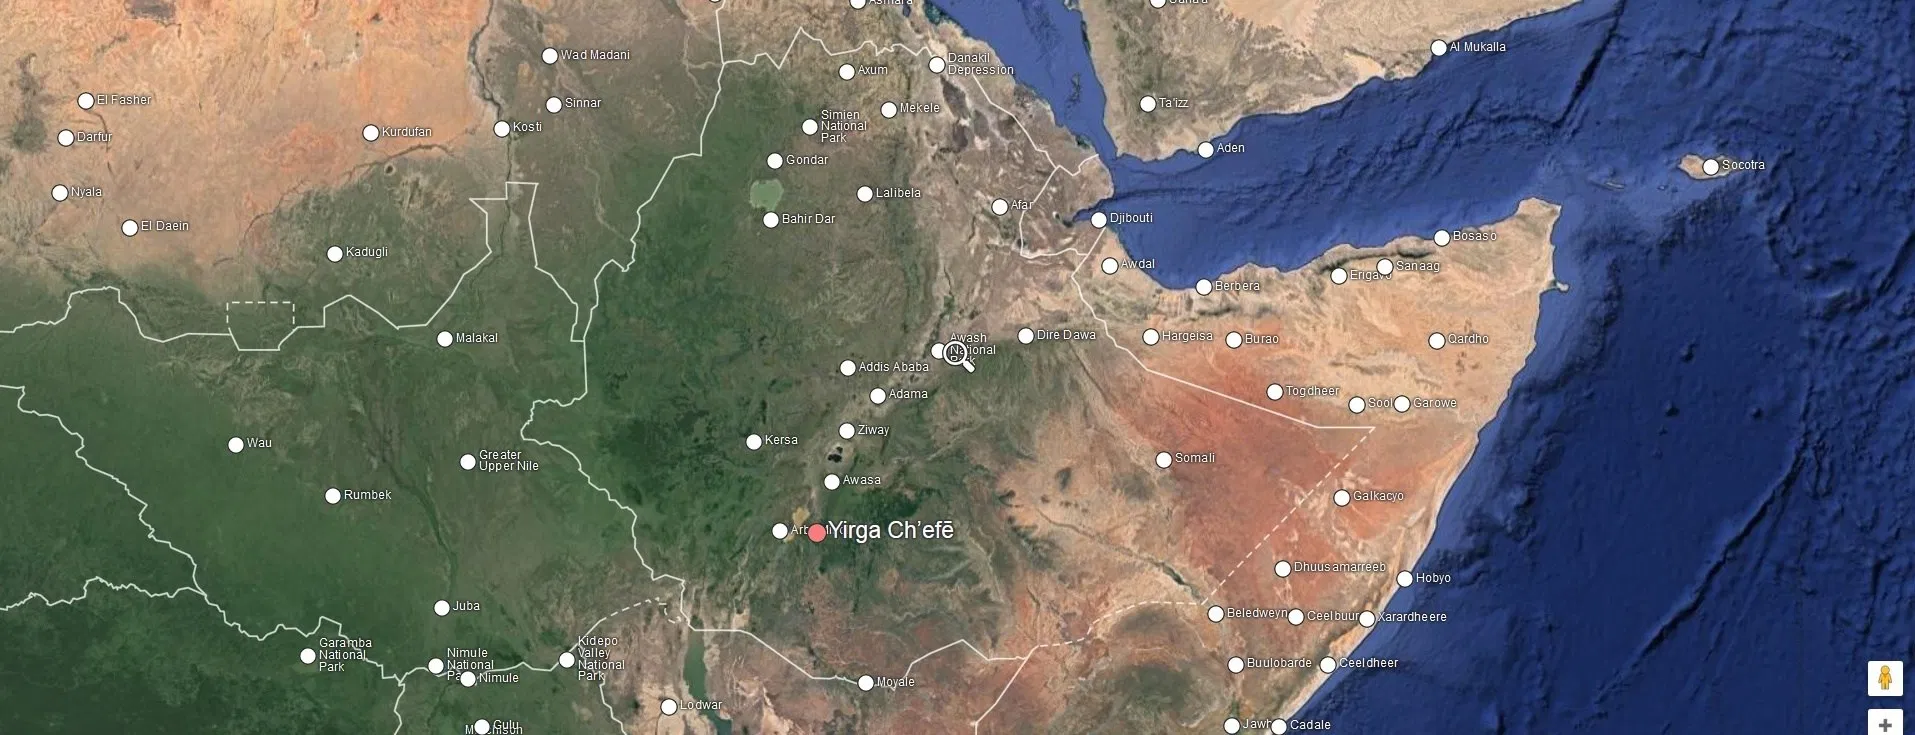 yirgacheffe-location-in-ethiopia